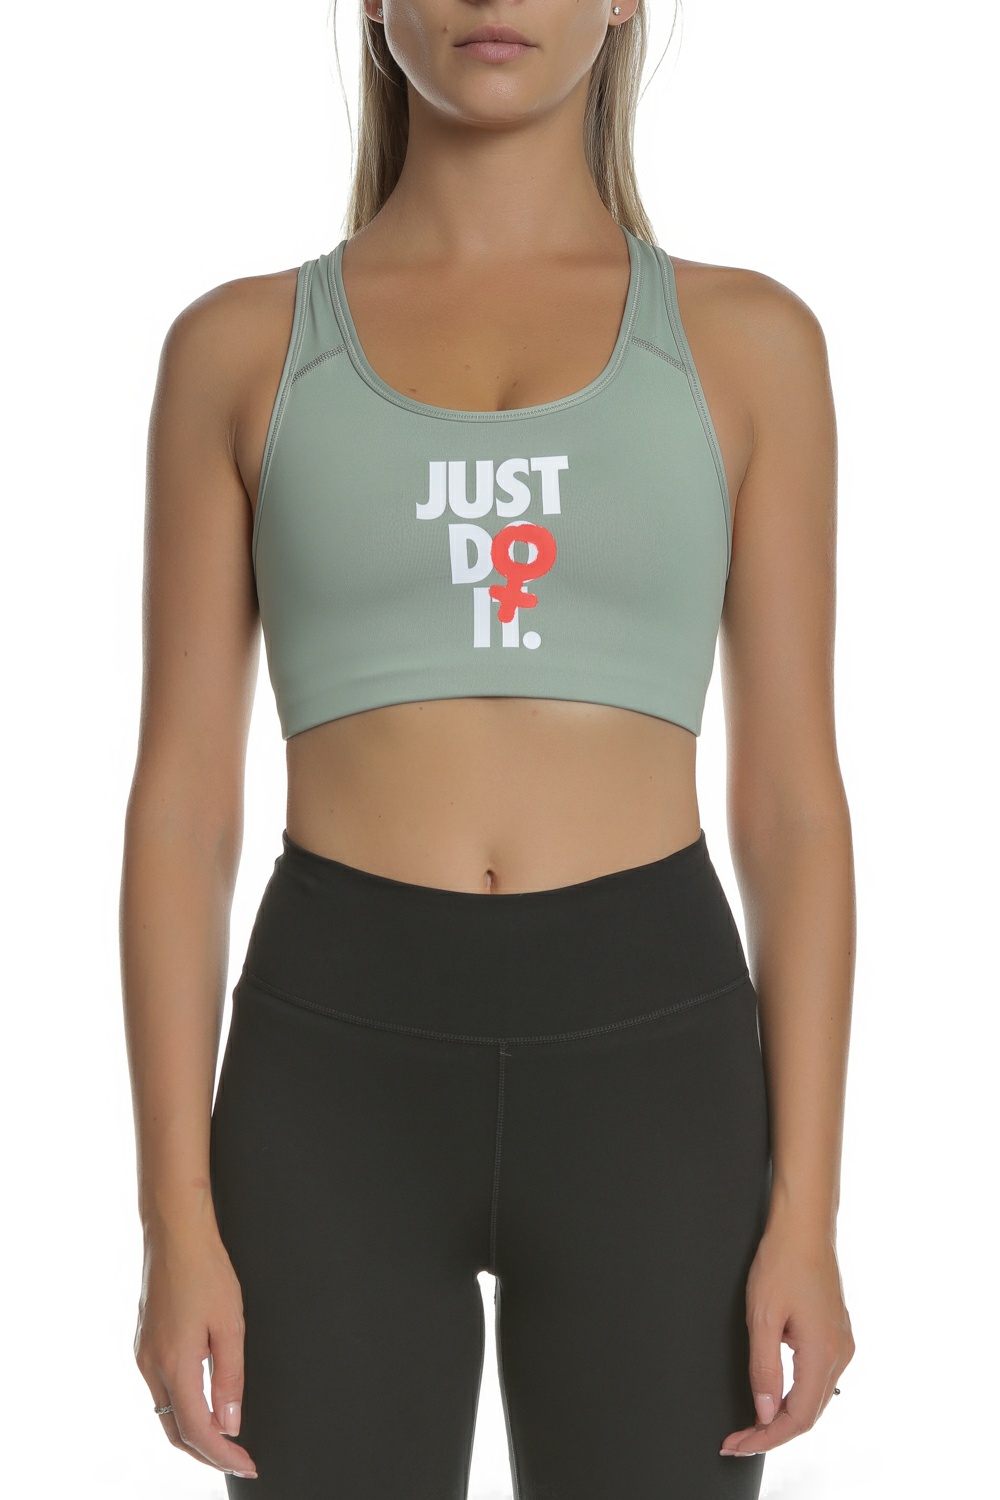 Γυναικεία/Ρούχα/Αθλητικά/Μπουστάκια NIKE - Αθλητικό μπουστάκι μέτριας στήριξης JDI Nike Rebel Swoosh πράσινο